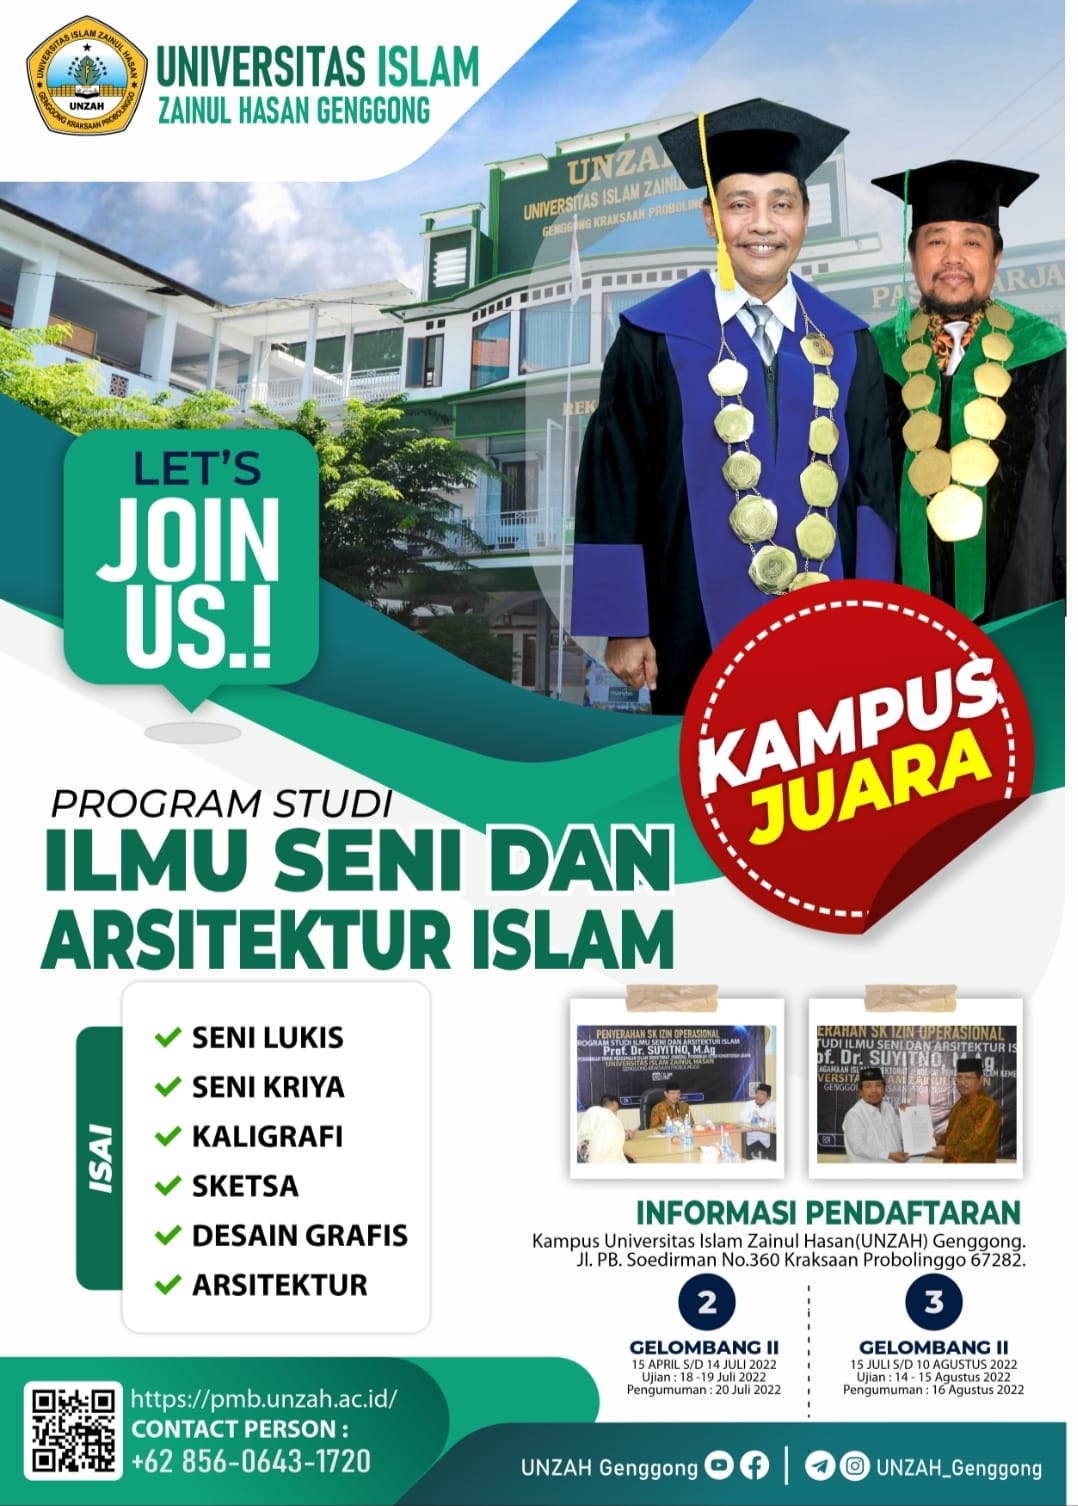 Pendaftaran Mahasiswa Baru Ilmu Seni dan Arsitektur Islam 2022/2023 Sudah Dibuka, Yuk Daftar Kuliah di UNZAH..!